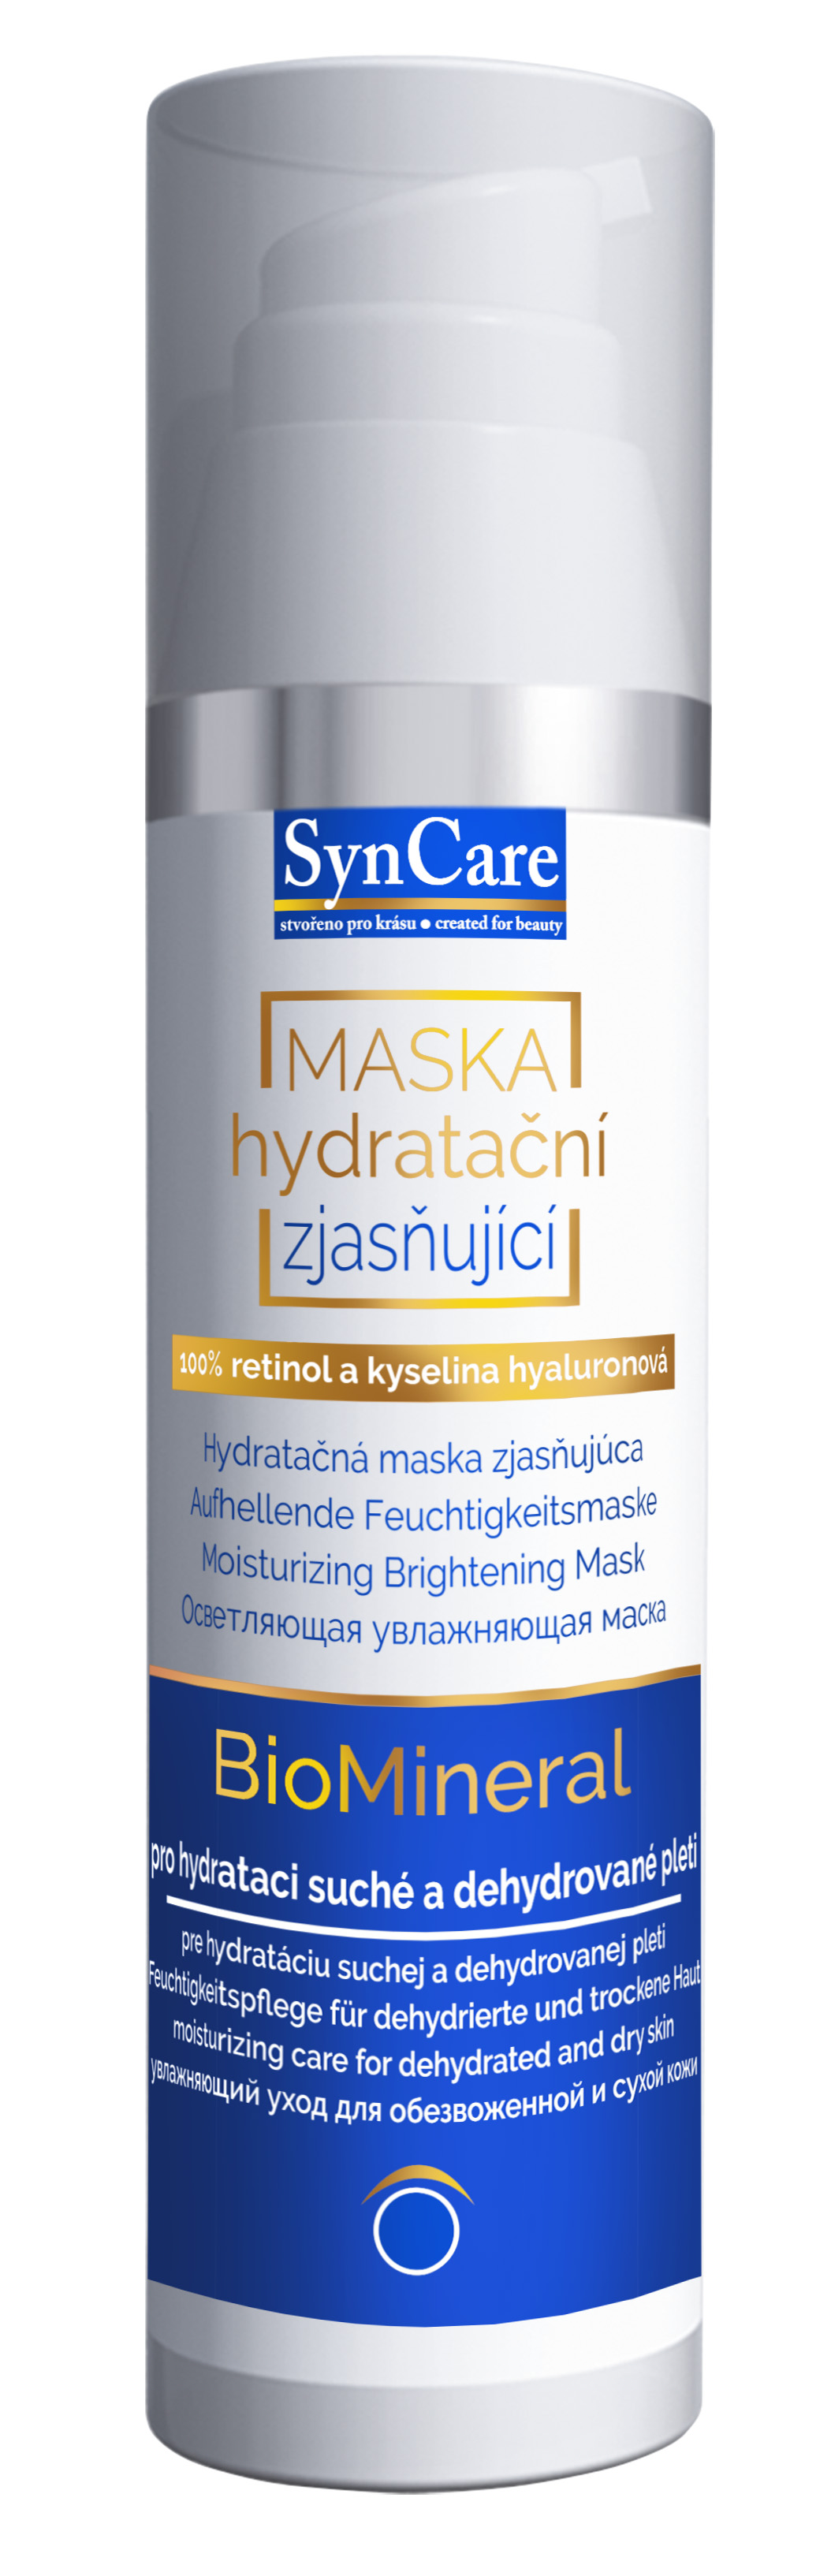 SynCare Hydratační maska zjasňující se 100% retinolem & kyselinou hyaluronovou